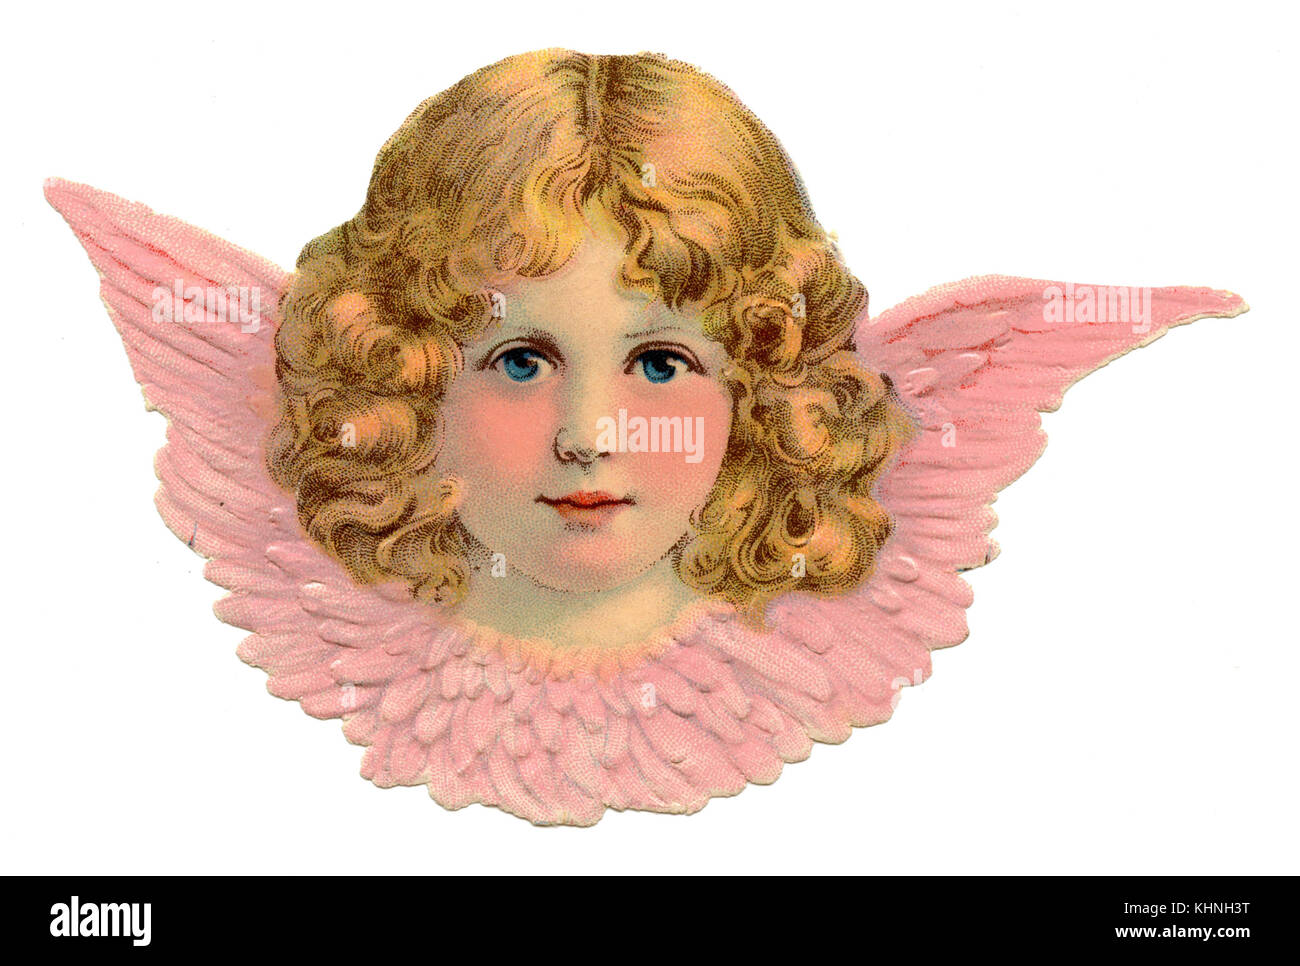 scrap: angel face, pink (Glanzbild, Oblate: Engelsgesicht, rosa) Stock Photo